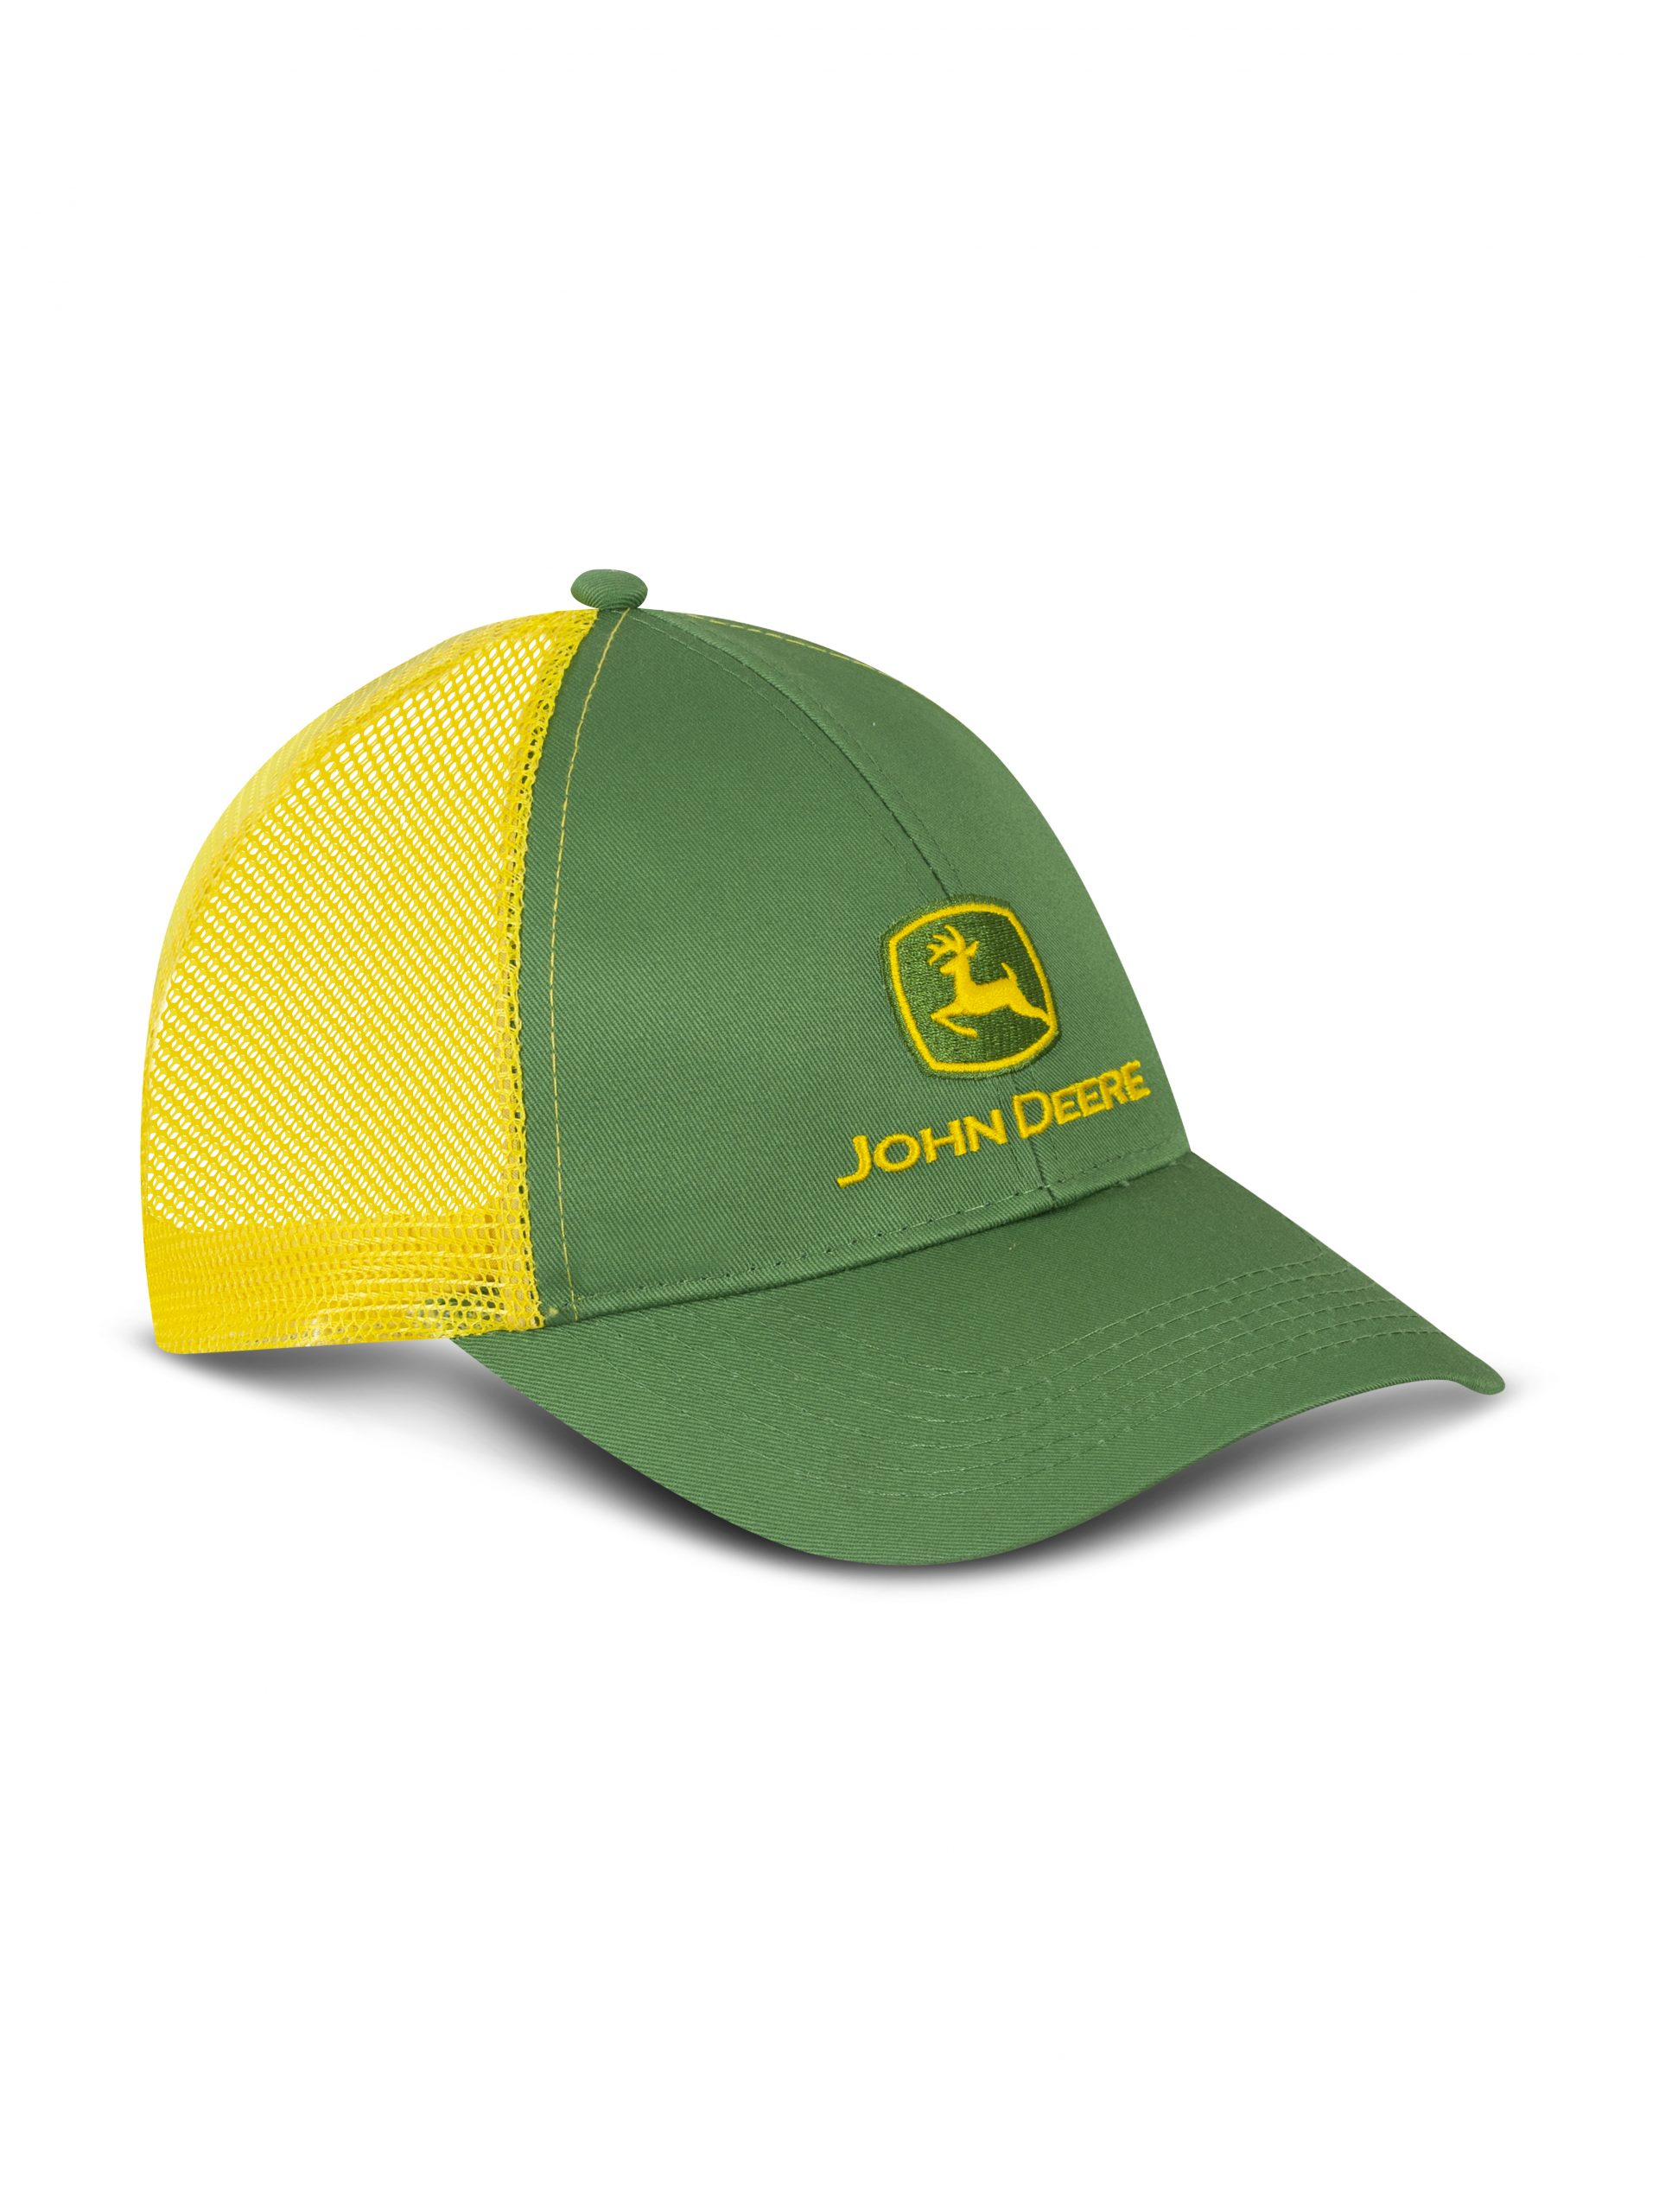 Gorra John Deere para caballeros con malla amarilla. Más variedades,  diseños y modelos en nuestras tiendas. 🔖Desde $14.19 cod.…